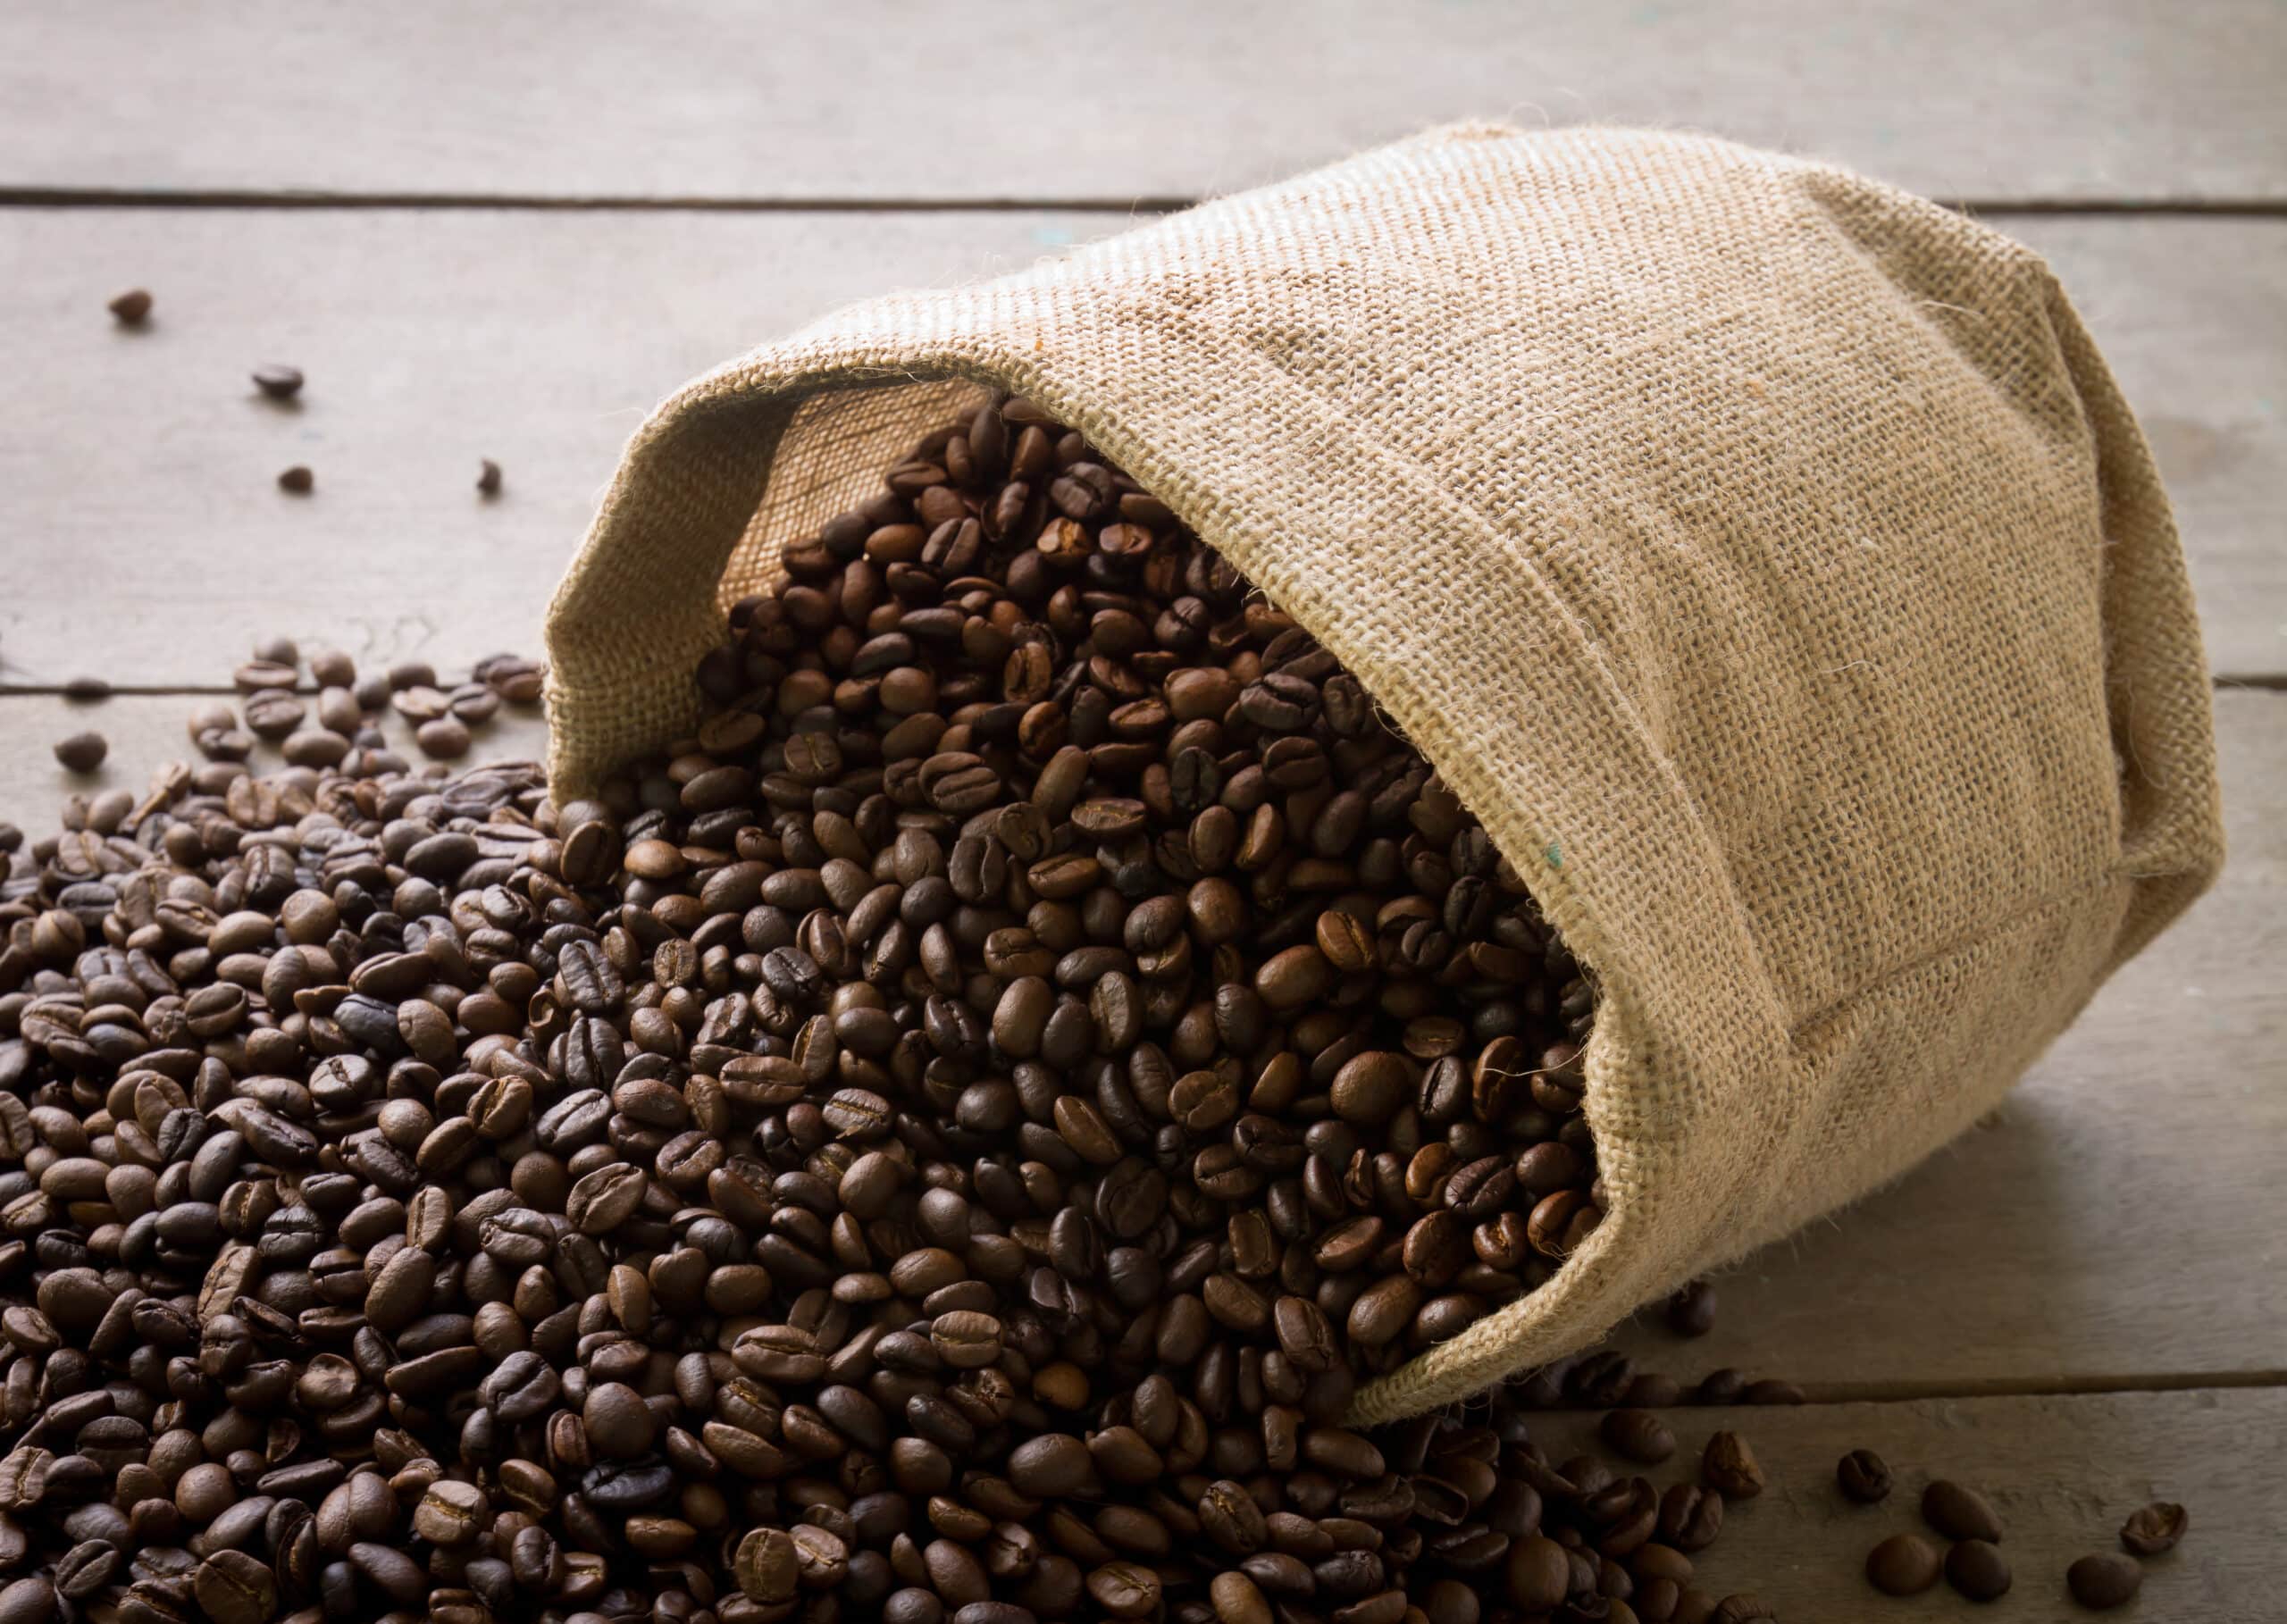 Consumo mundial de café foi estimado em 177 milhões de sacas